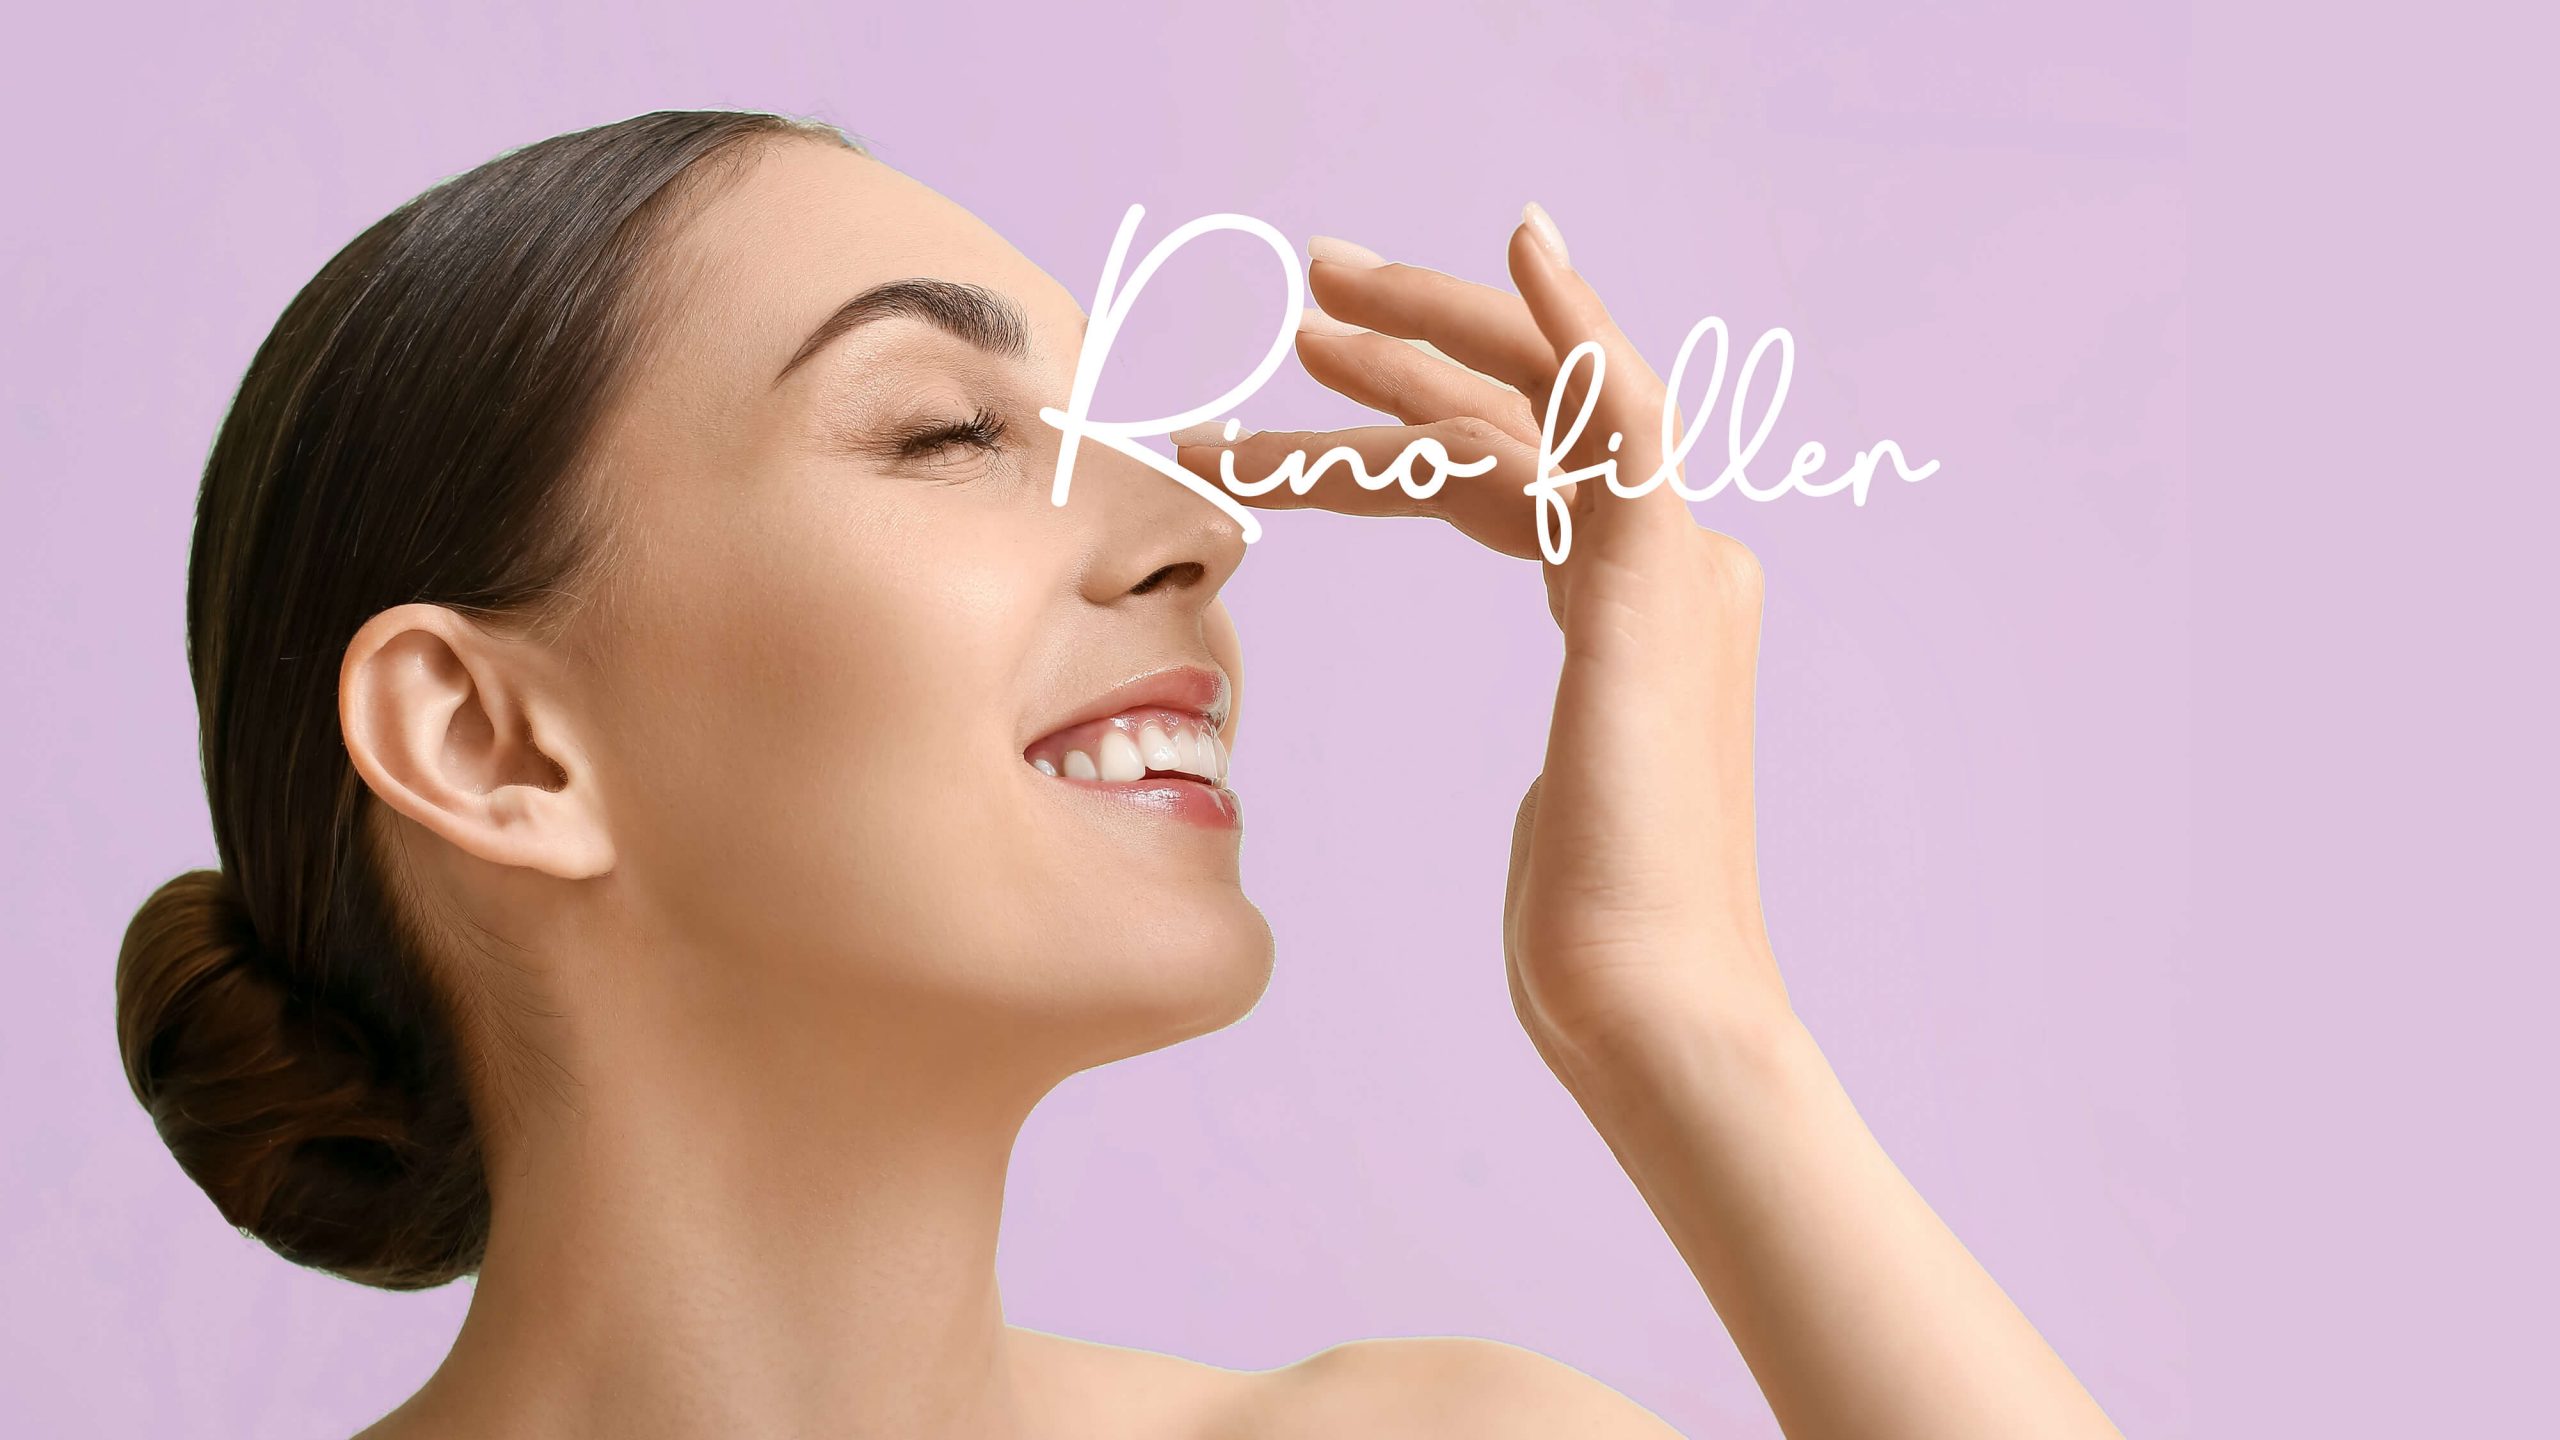 Featured image for “Rinofiller e filler labbra: come rimodellano il viso?”